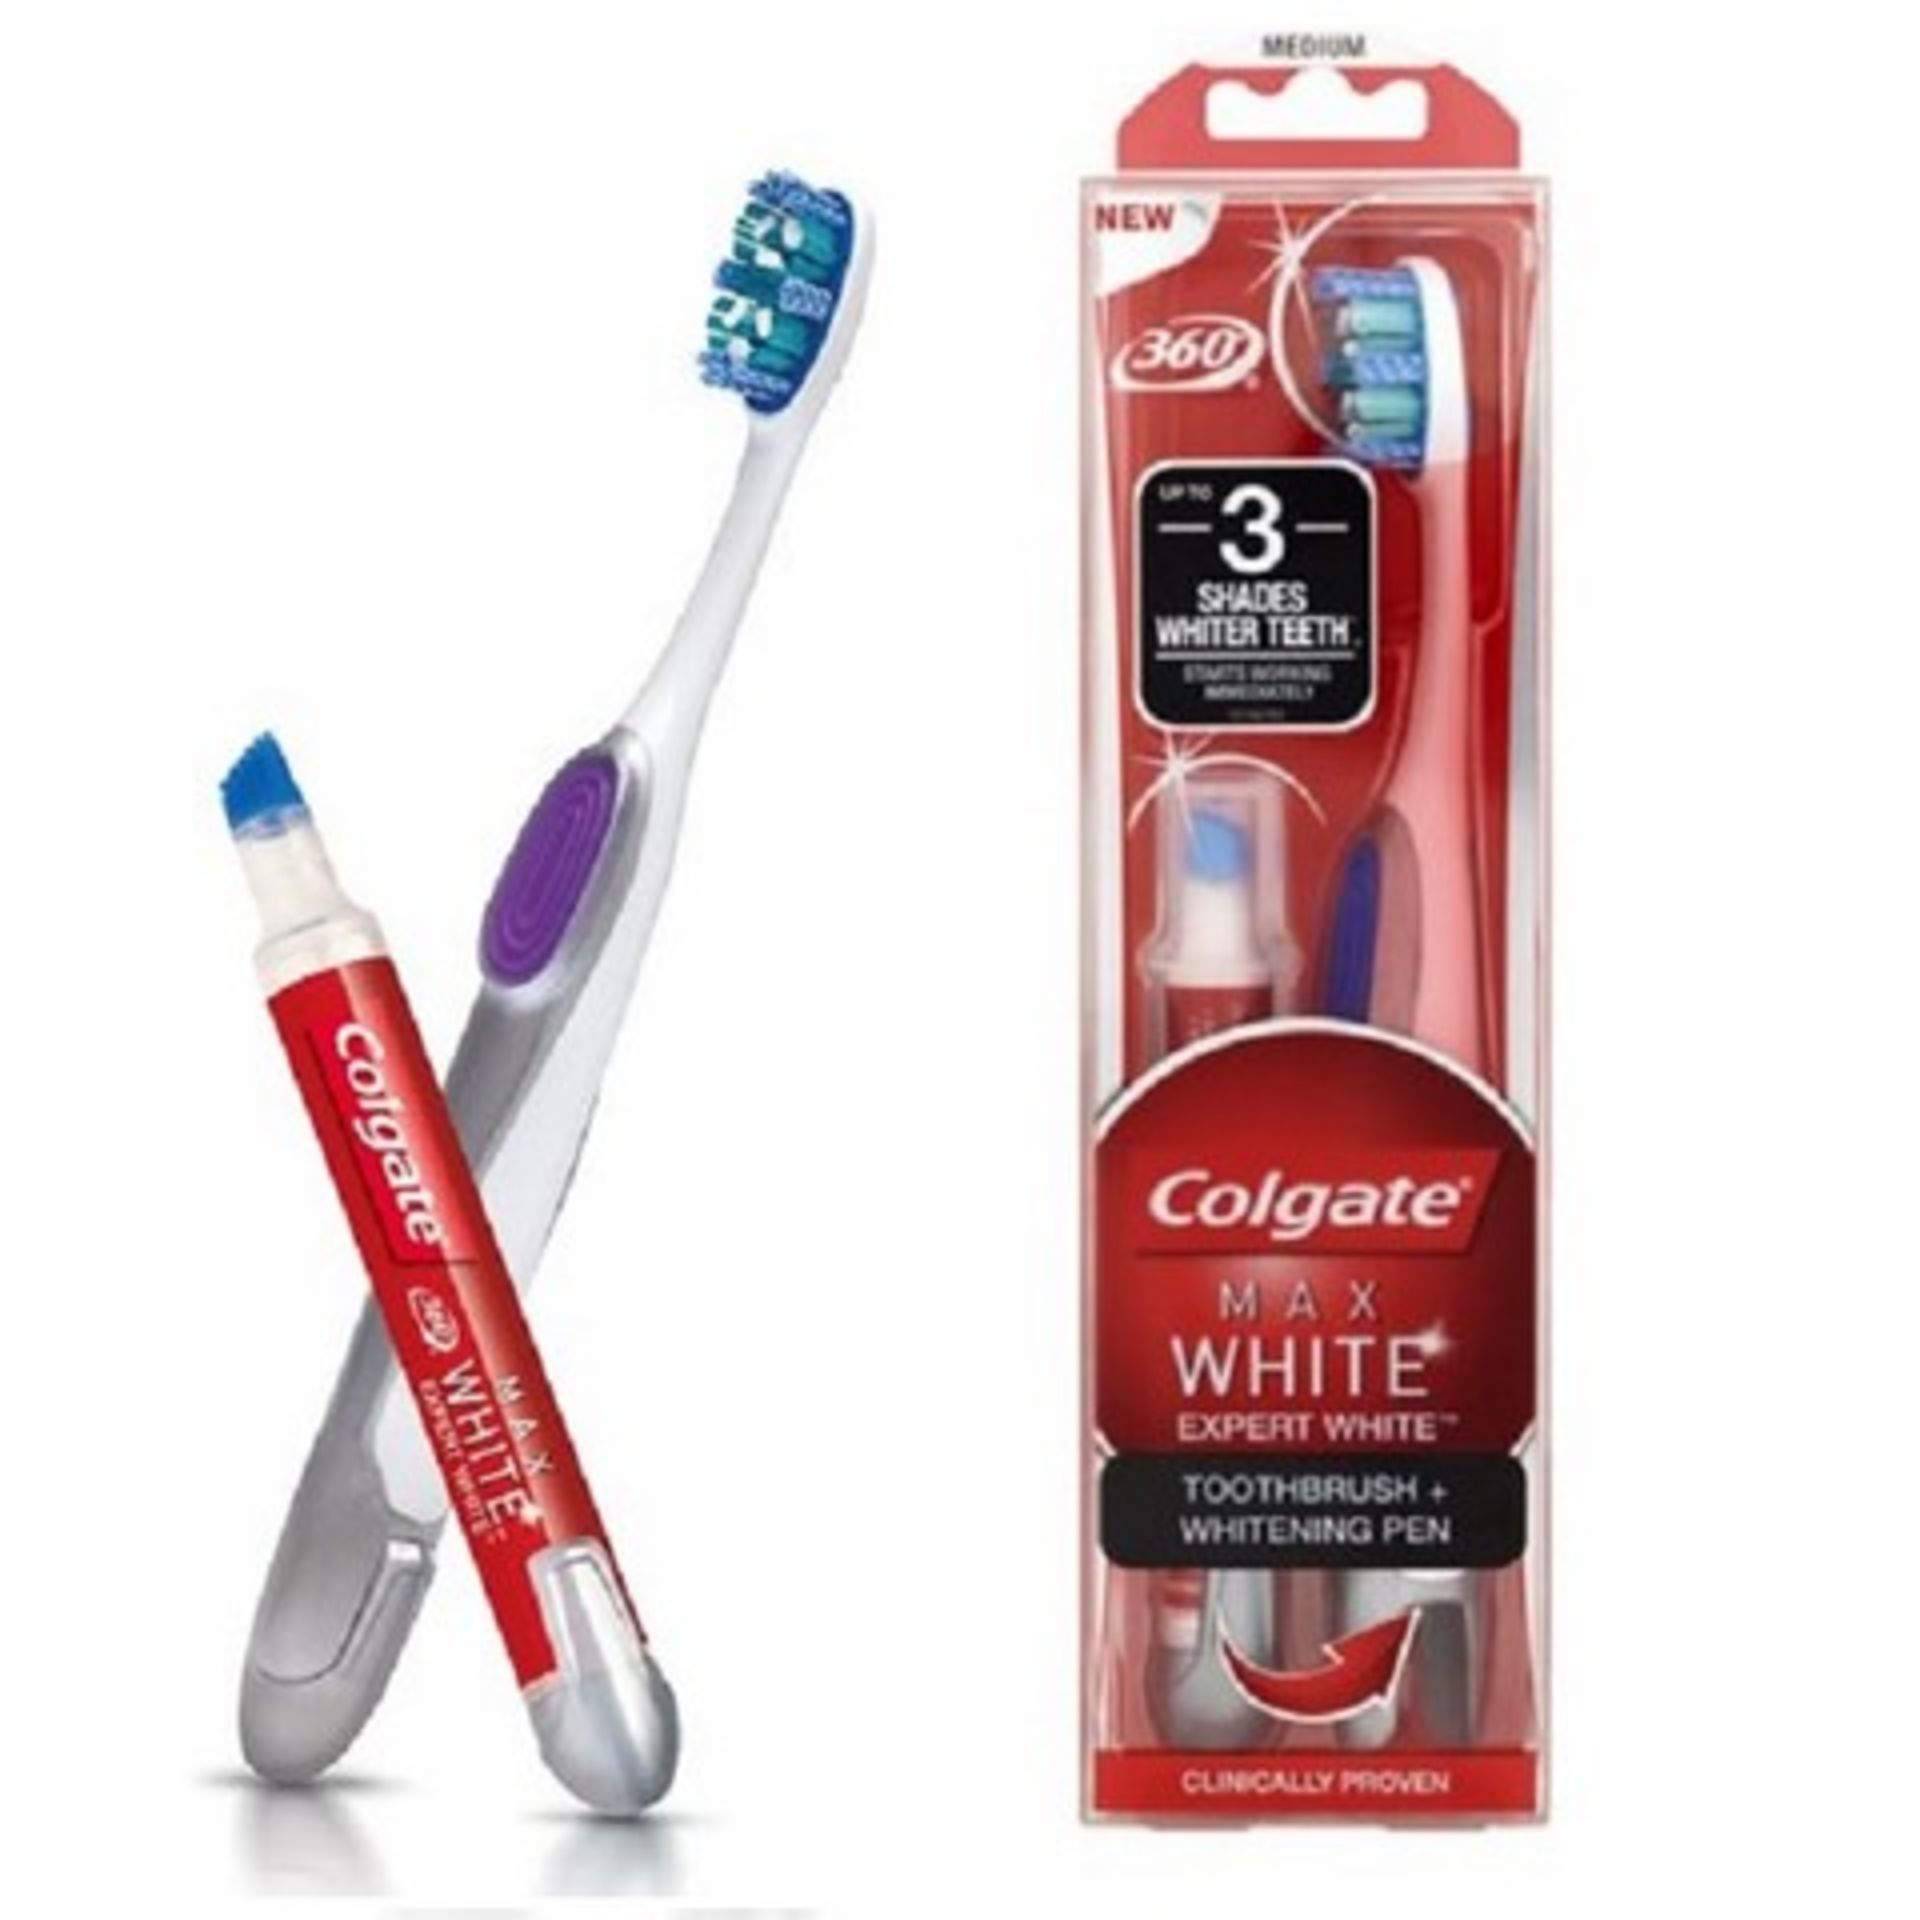 V Brand New Colgate Max White Expert White Toothbrush and Whitening Pen - Waitrose Price £12.50